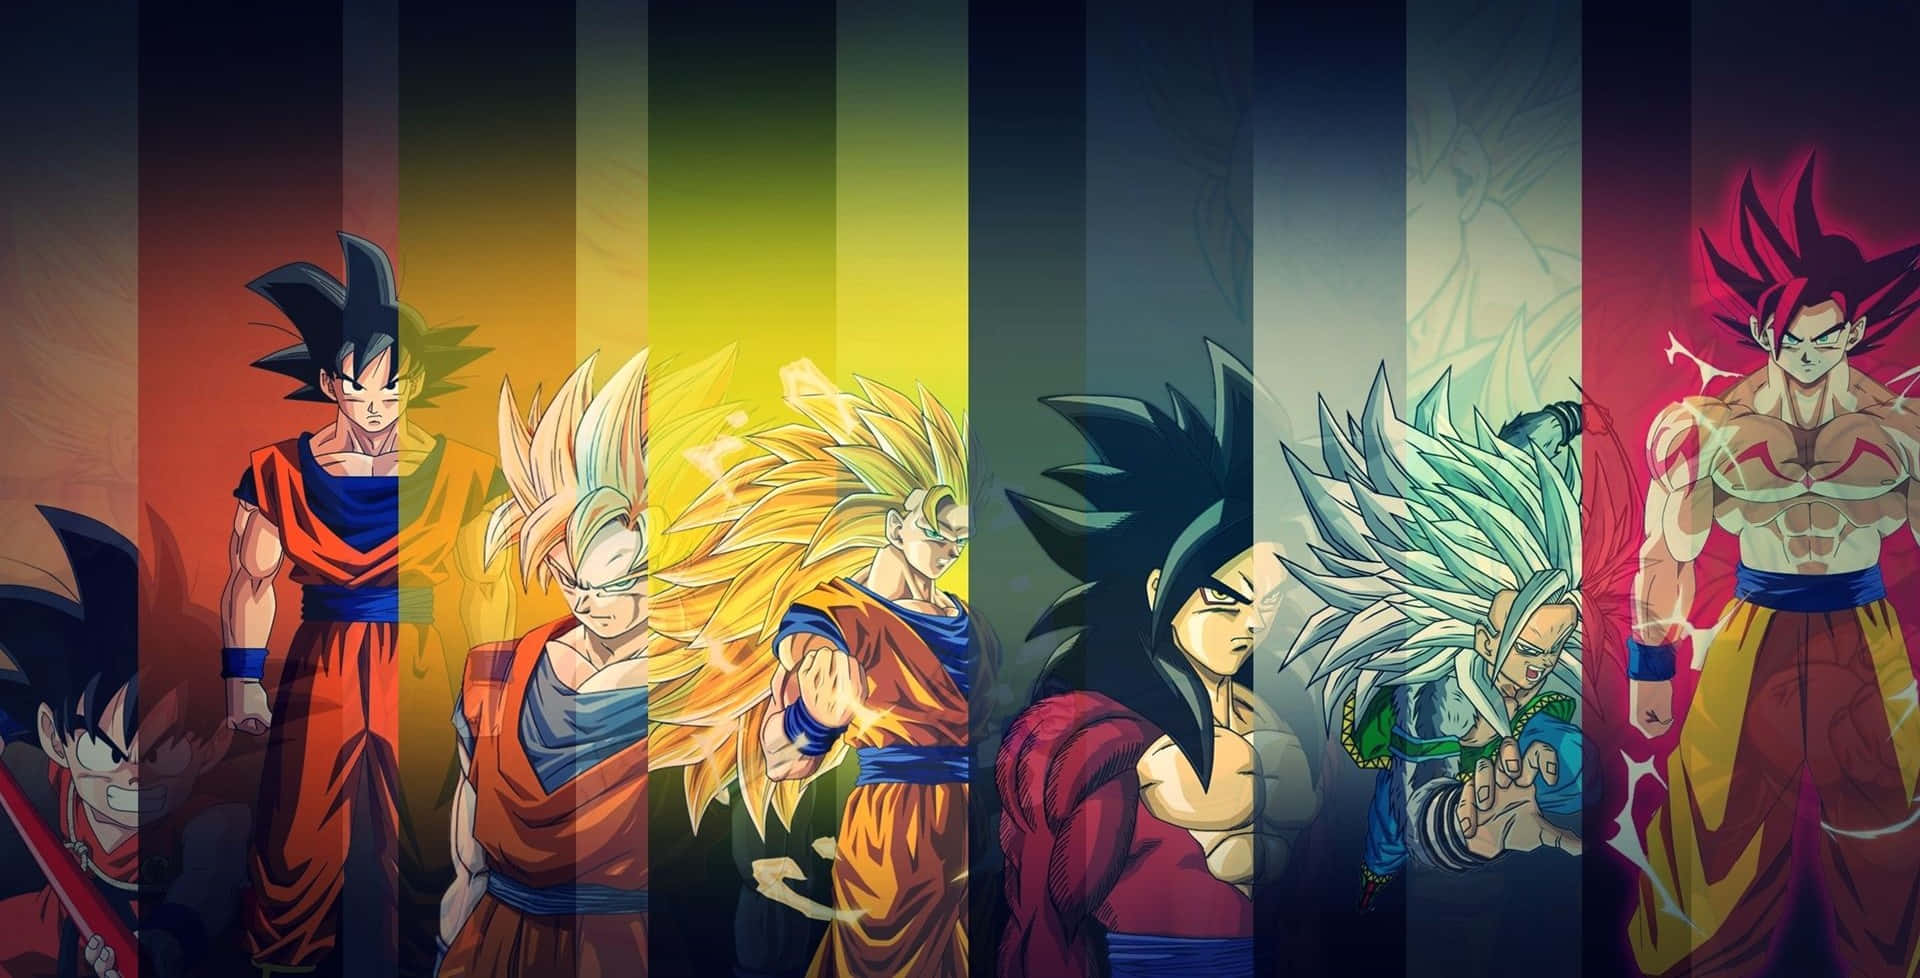 Immagini Di Dragon Ball Z Goku